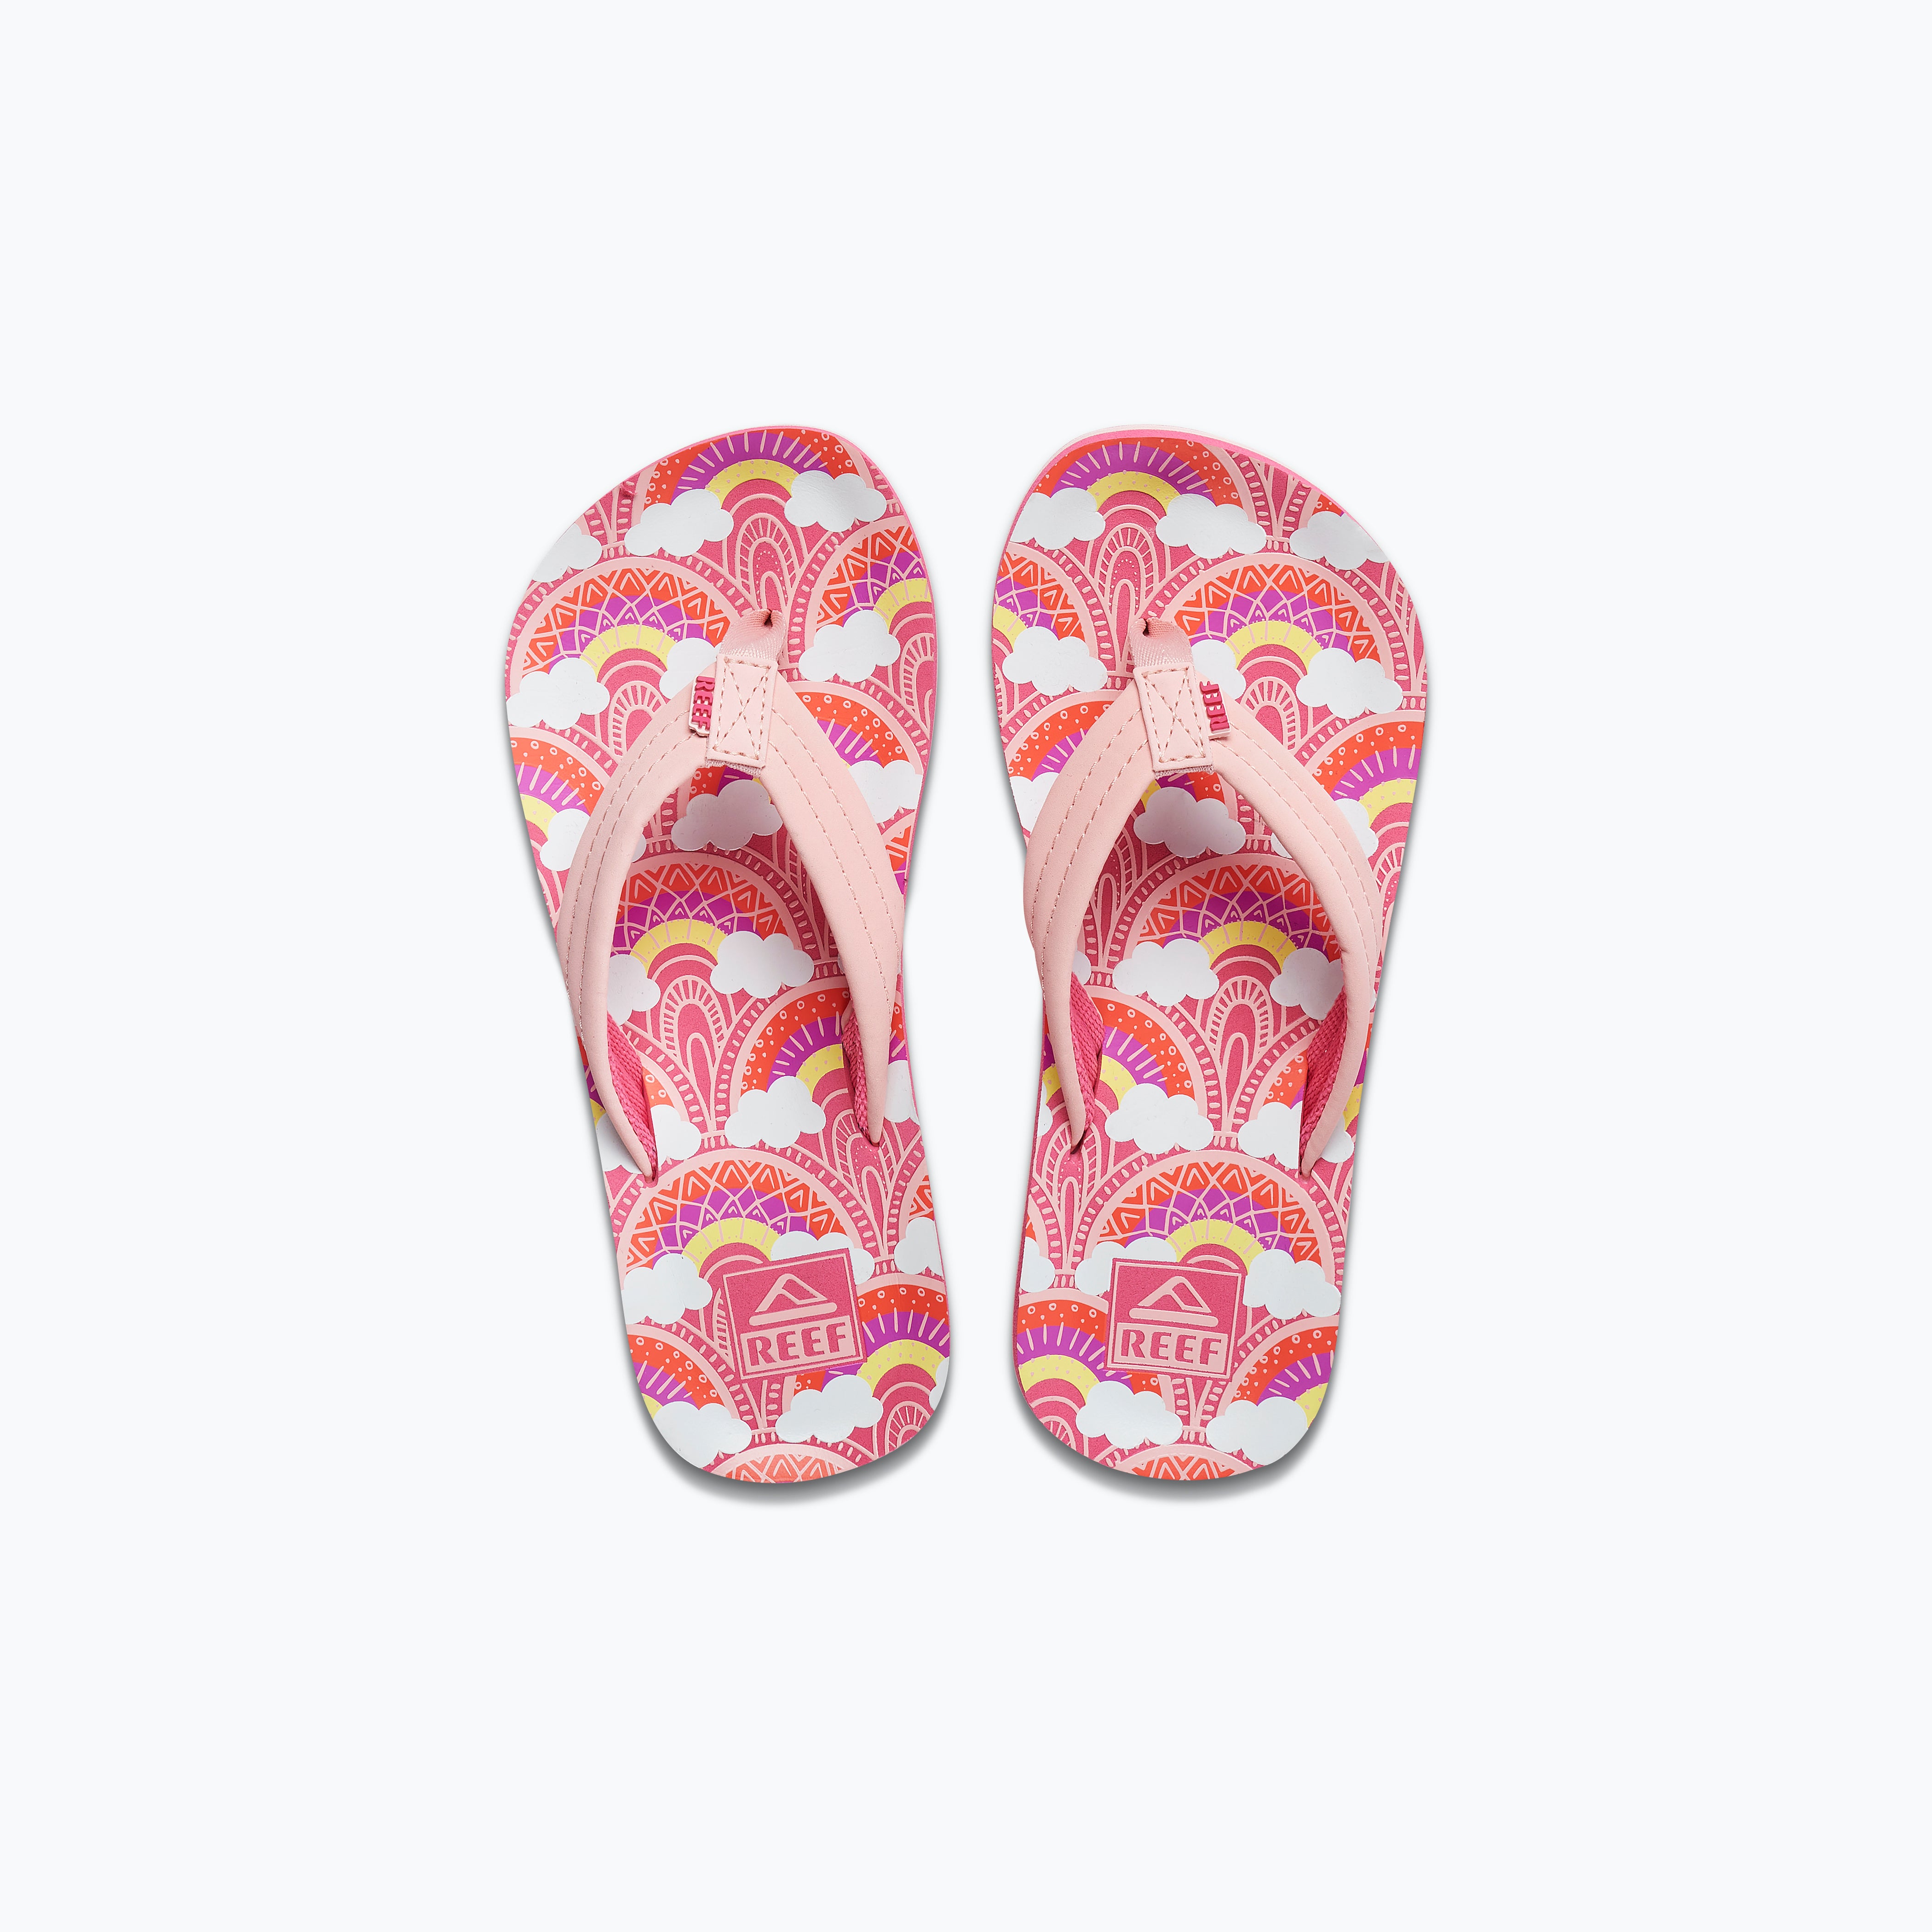 Pink Flip Flops - Buy Pink Flip Flops online in India